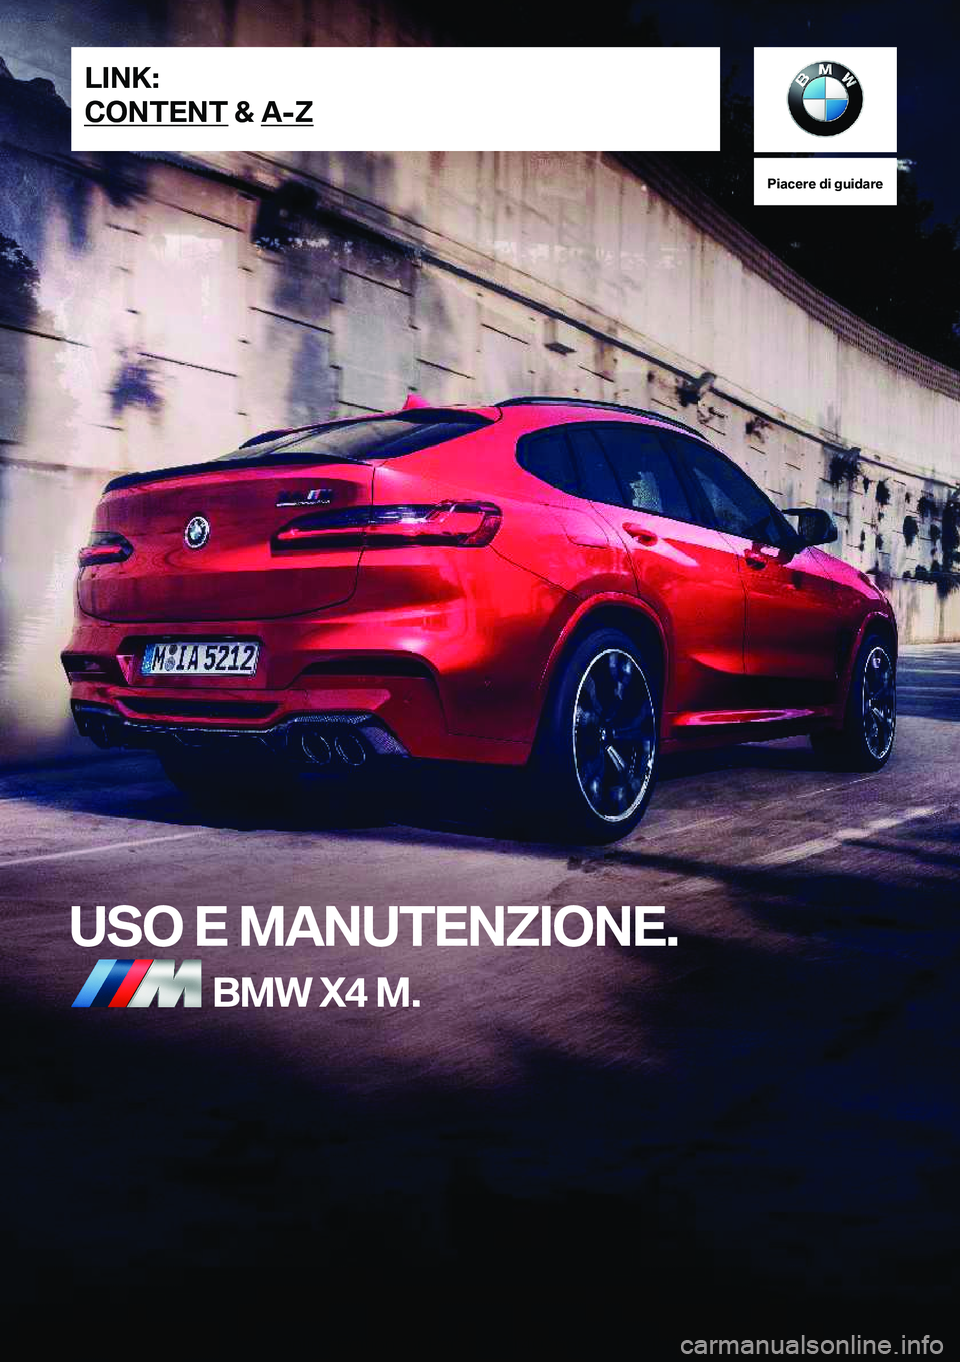 BMW X4 M 2020  Libretti Di Uso E manutenzione (in Italian) �P�i�a�c�e�r�e��d�i��g�u�i�d�a�r�e
�U�S�O��E��M�A�N�U�T�E�N�Z�I�O�N�E�.�B�M�W��X�4��M�.�L�I�N�K�:
�C�O�N�T�E�N�T��&��A�-�Z�O�n�l�i�n�e��E�d�i�t�i�o�n��f�o�r��P�a�r�t��n�o�.��0�1�4�0�2�6�6